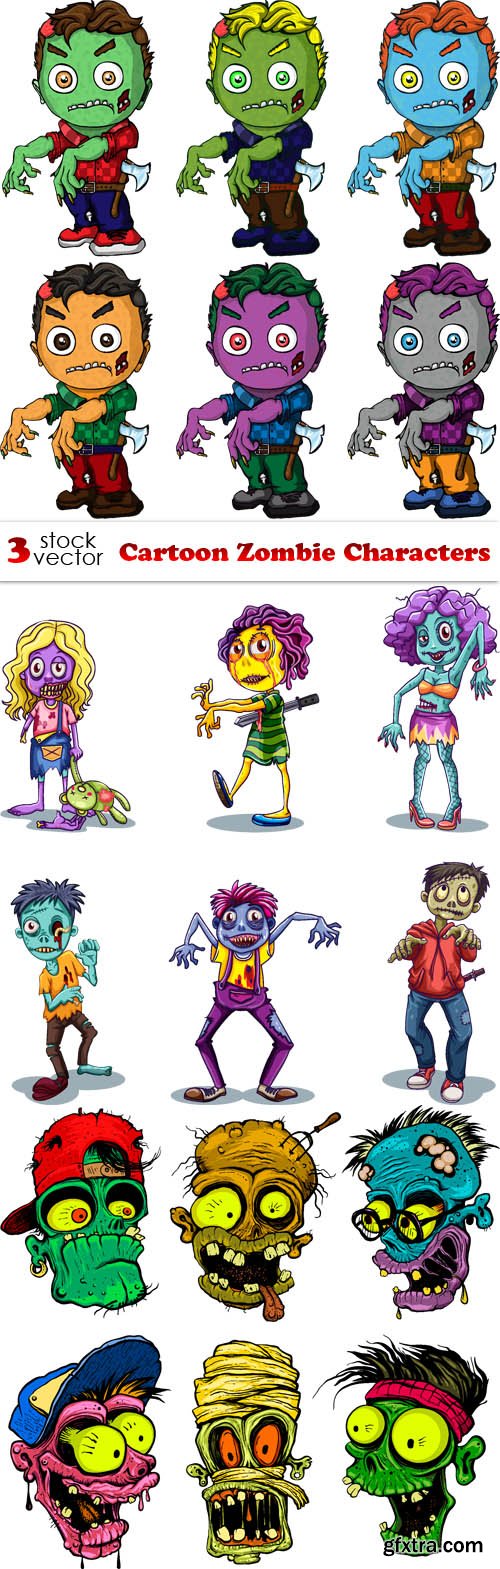 Vectors - Cartoon Zombie Characters